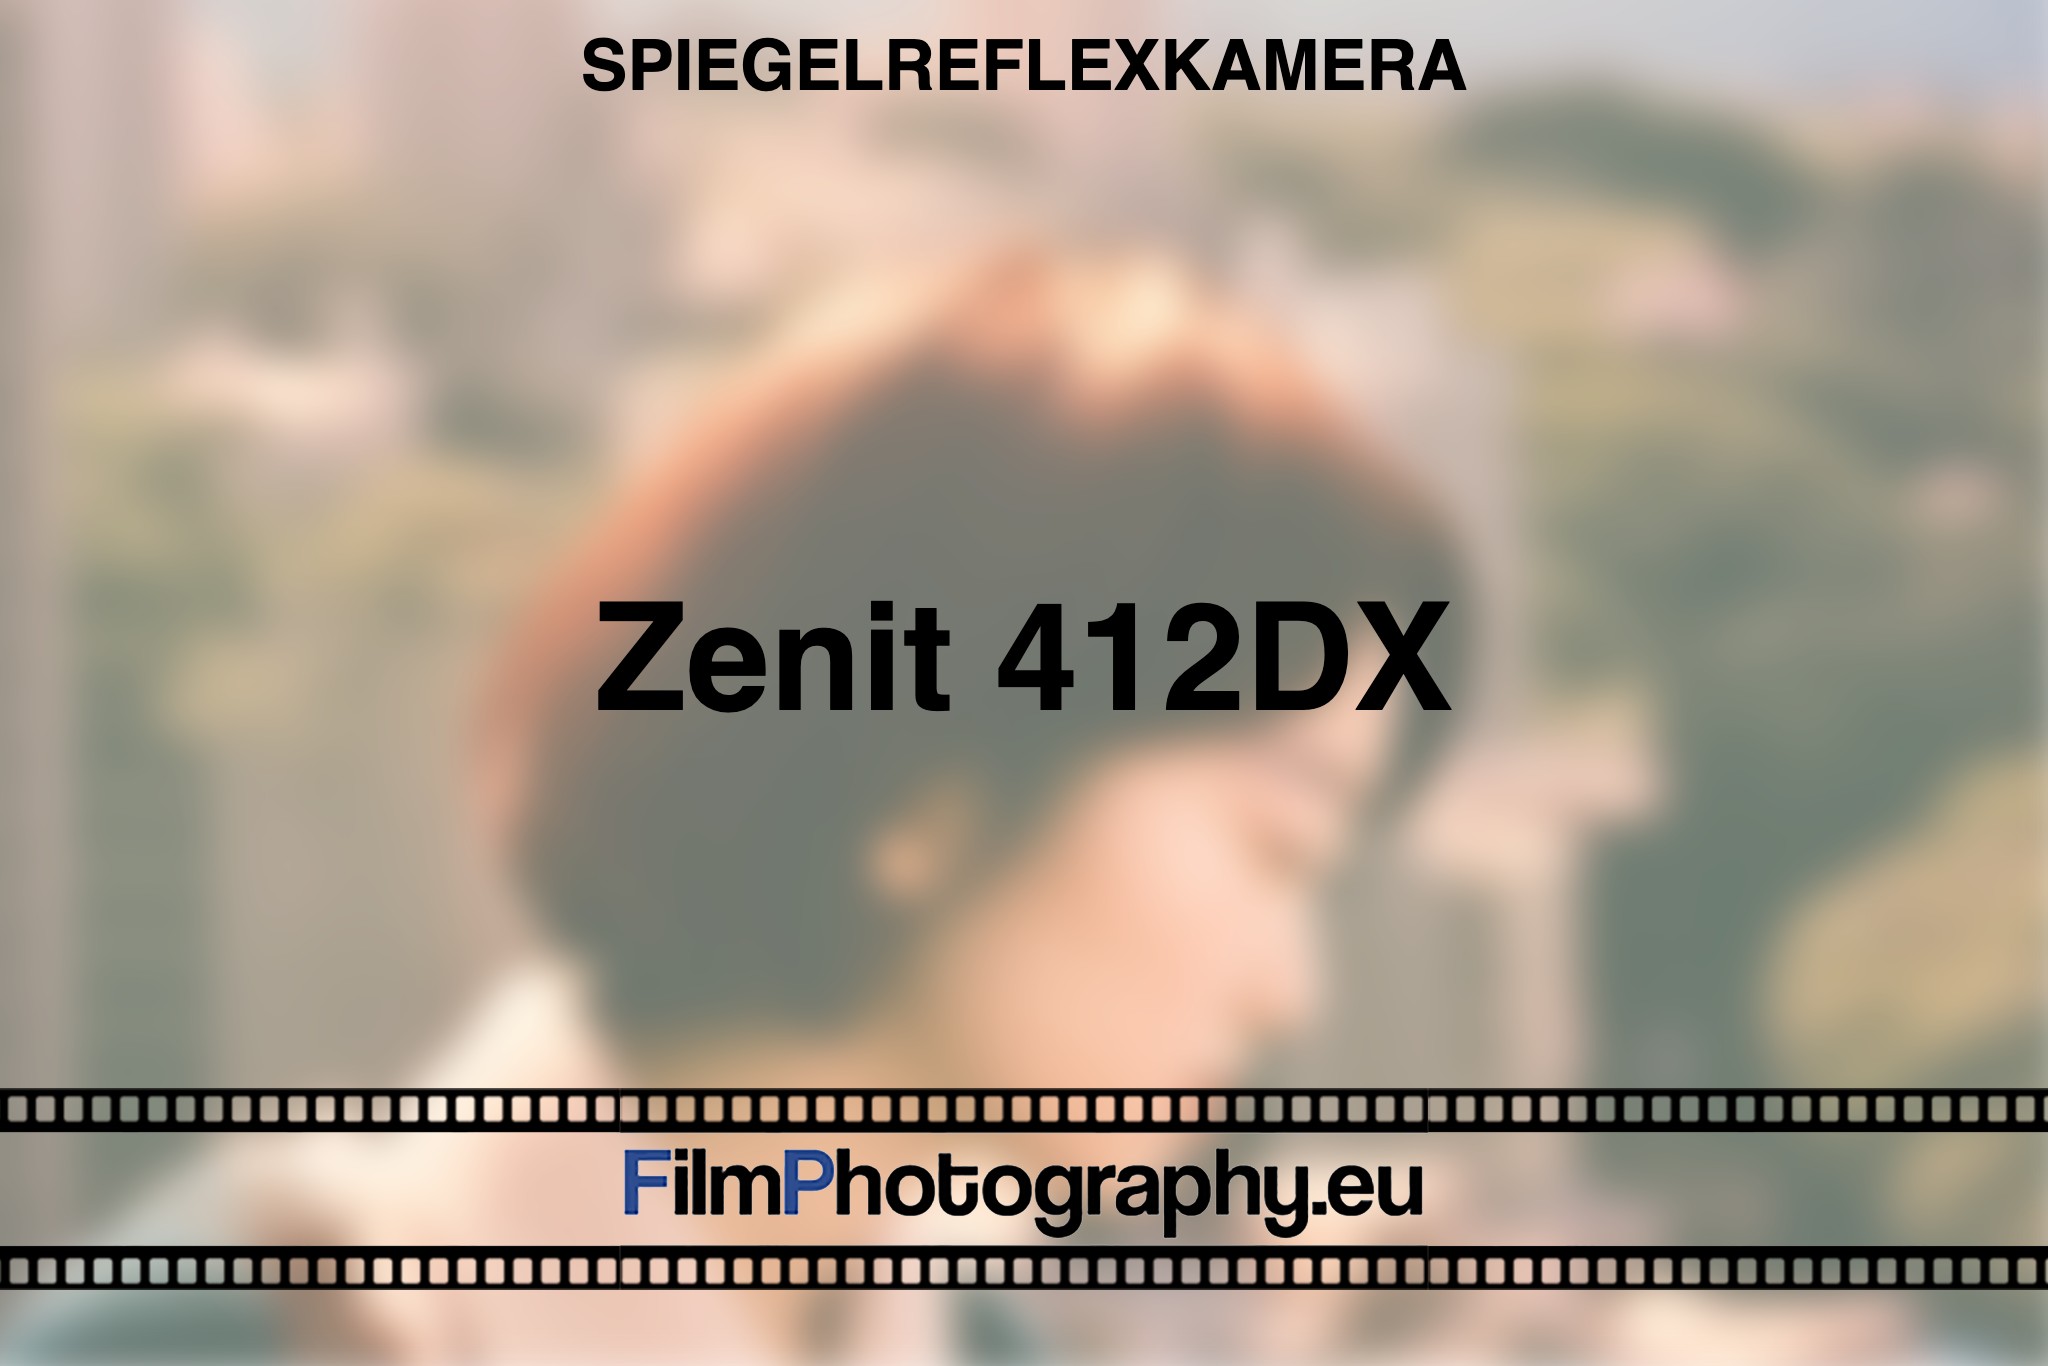 zenit-412dx-spiegelreflexkamera-bnv